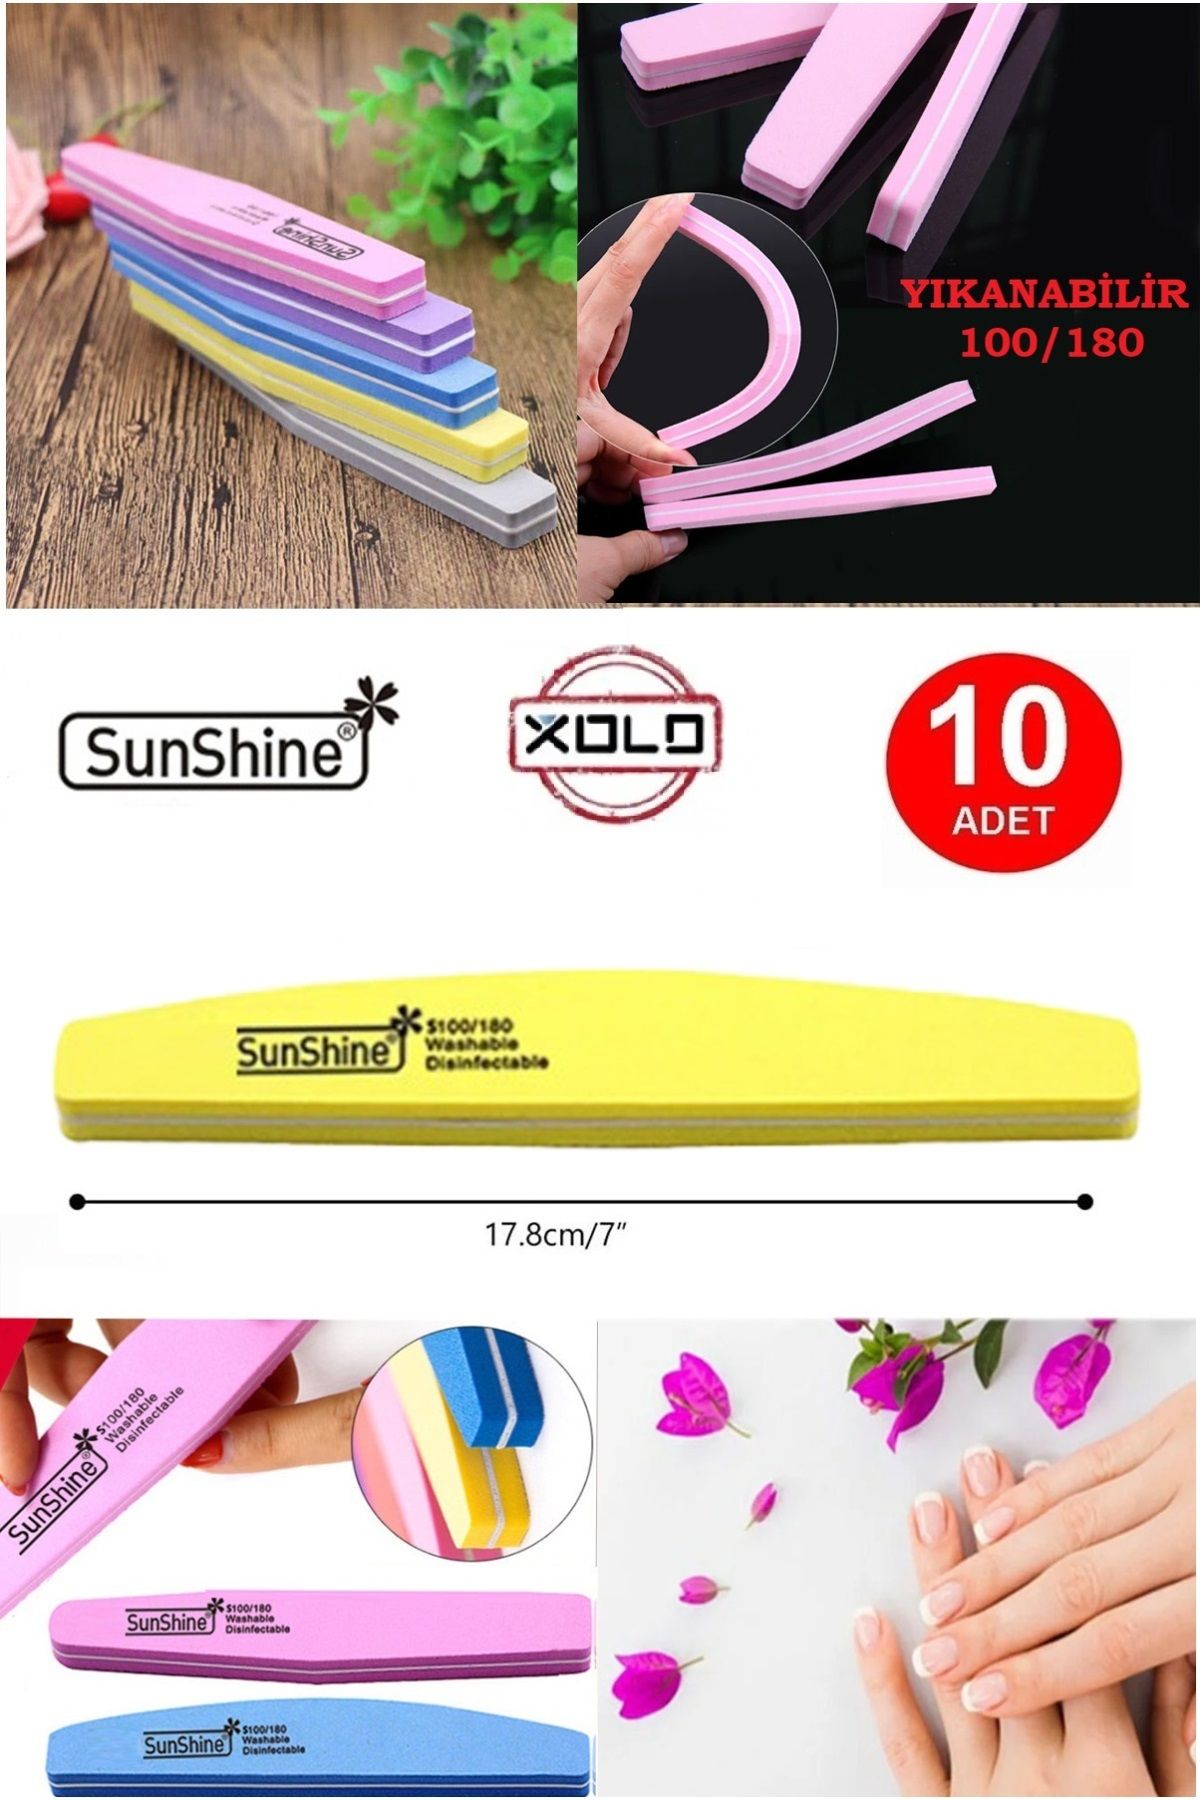 Xolo 10 Adet Sarı 100/180 Doğal Veya Protez Tırnak Törpüsü Çift Taraflı Yıkanabilir SunShine